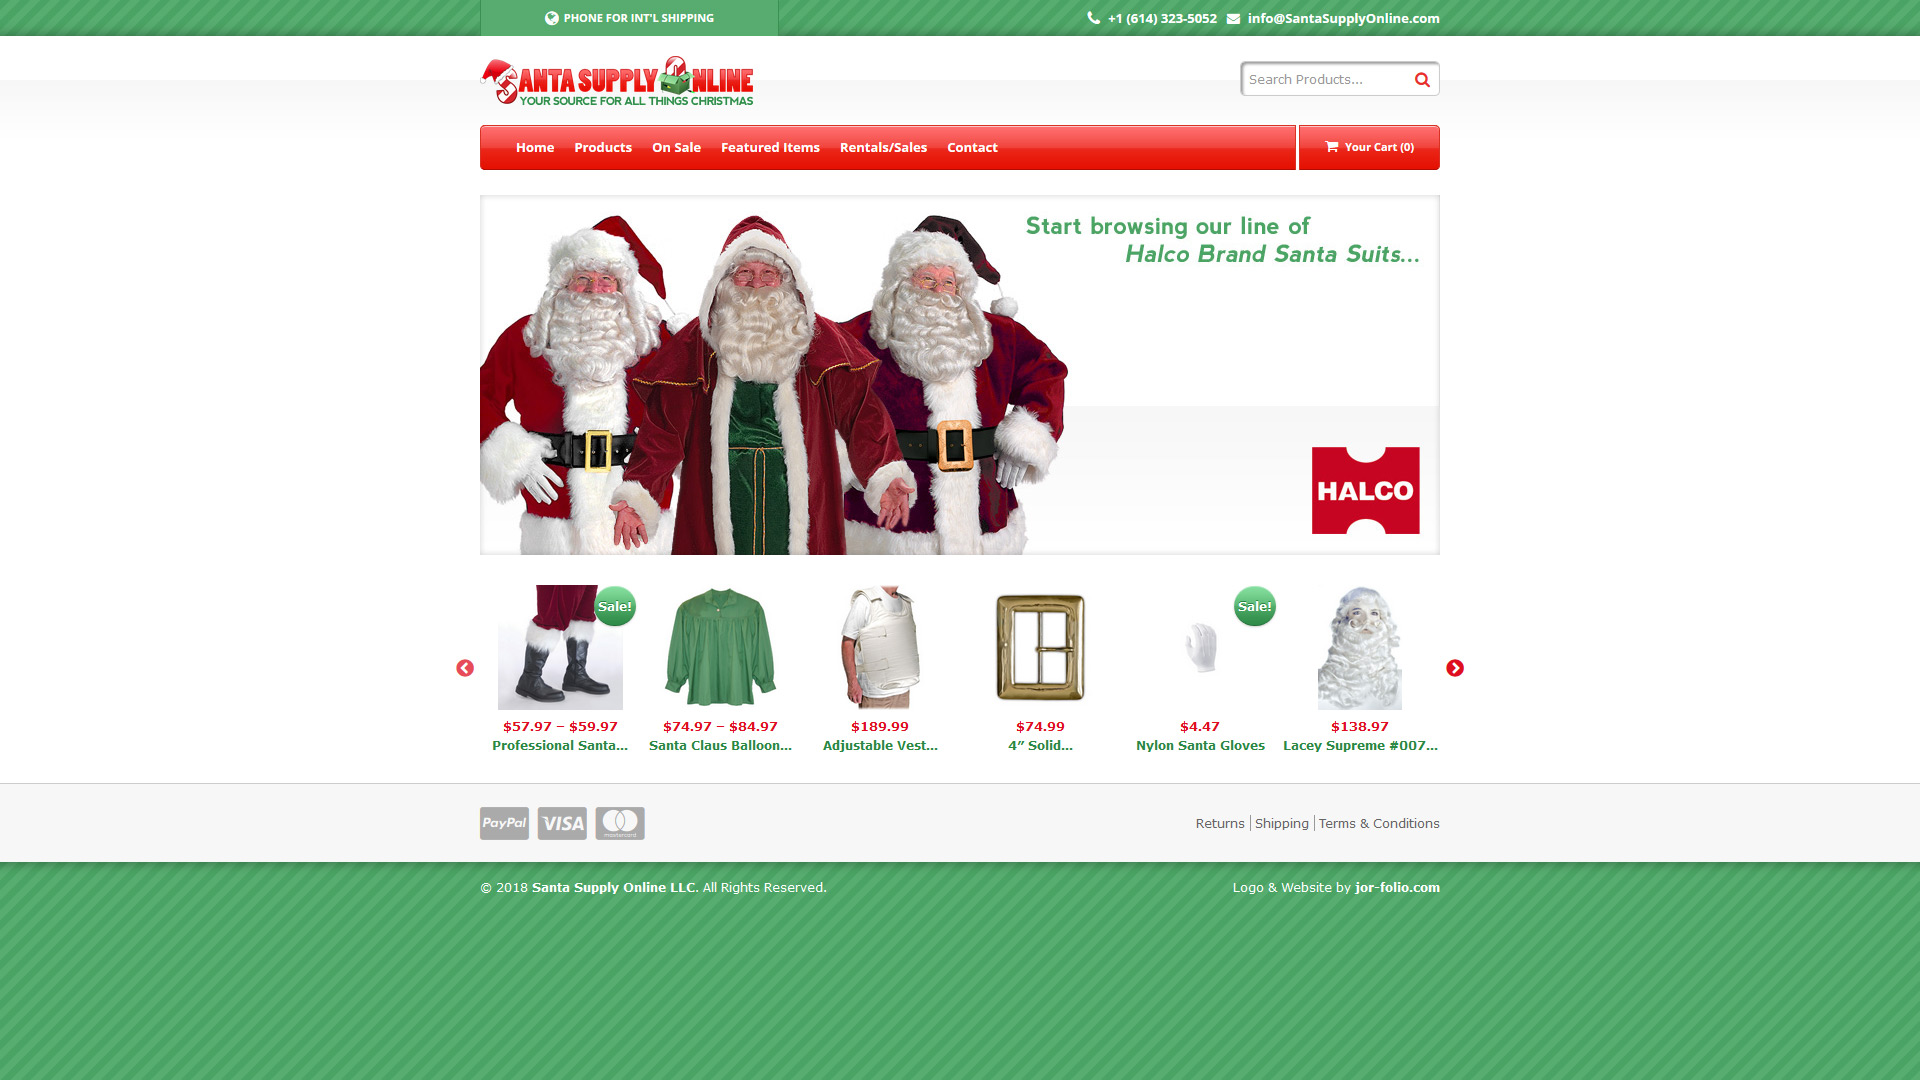 Santa Supply Online | santasupplyonline.com